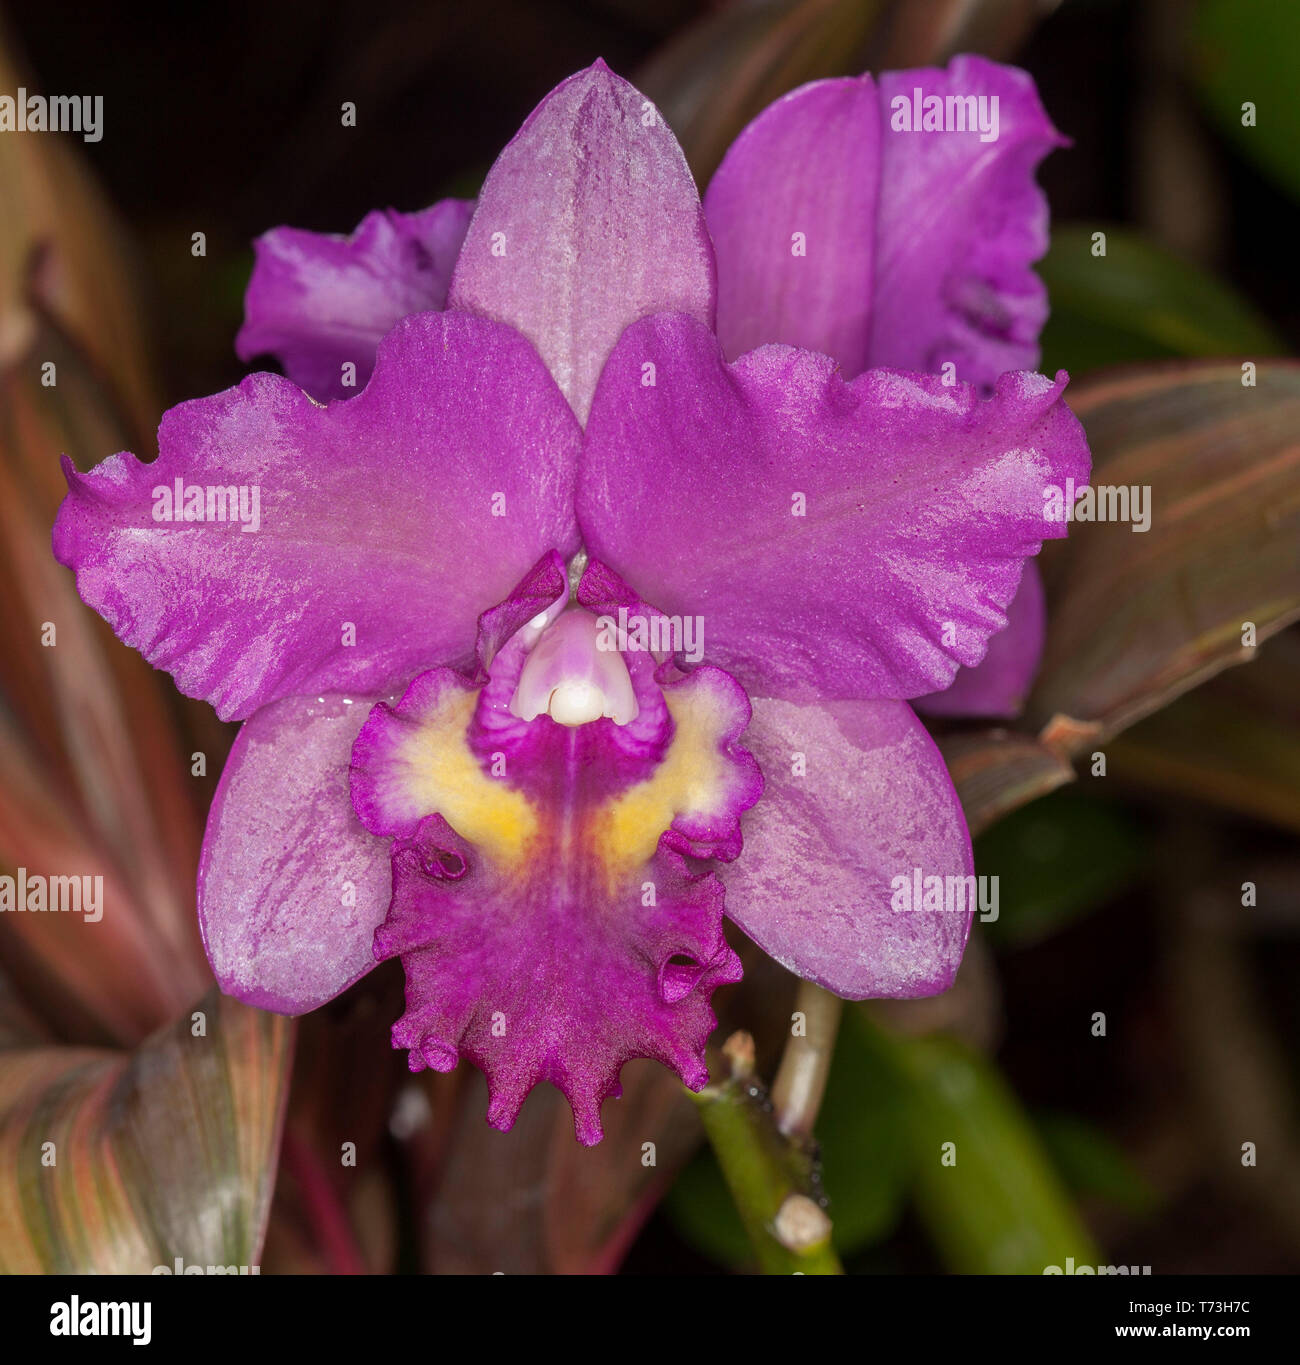 Spettacolare viola / rosso fiori di orchidea, Cattleya Narooma x inganno goccia "Rame e spot' su sfondo scuro Foto Stock